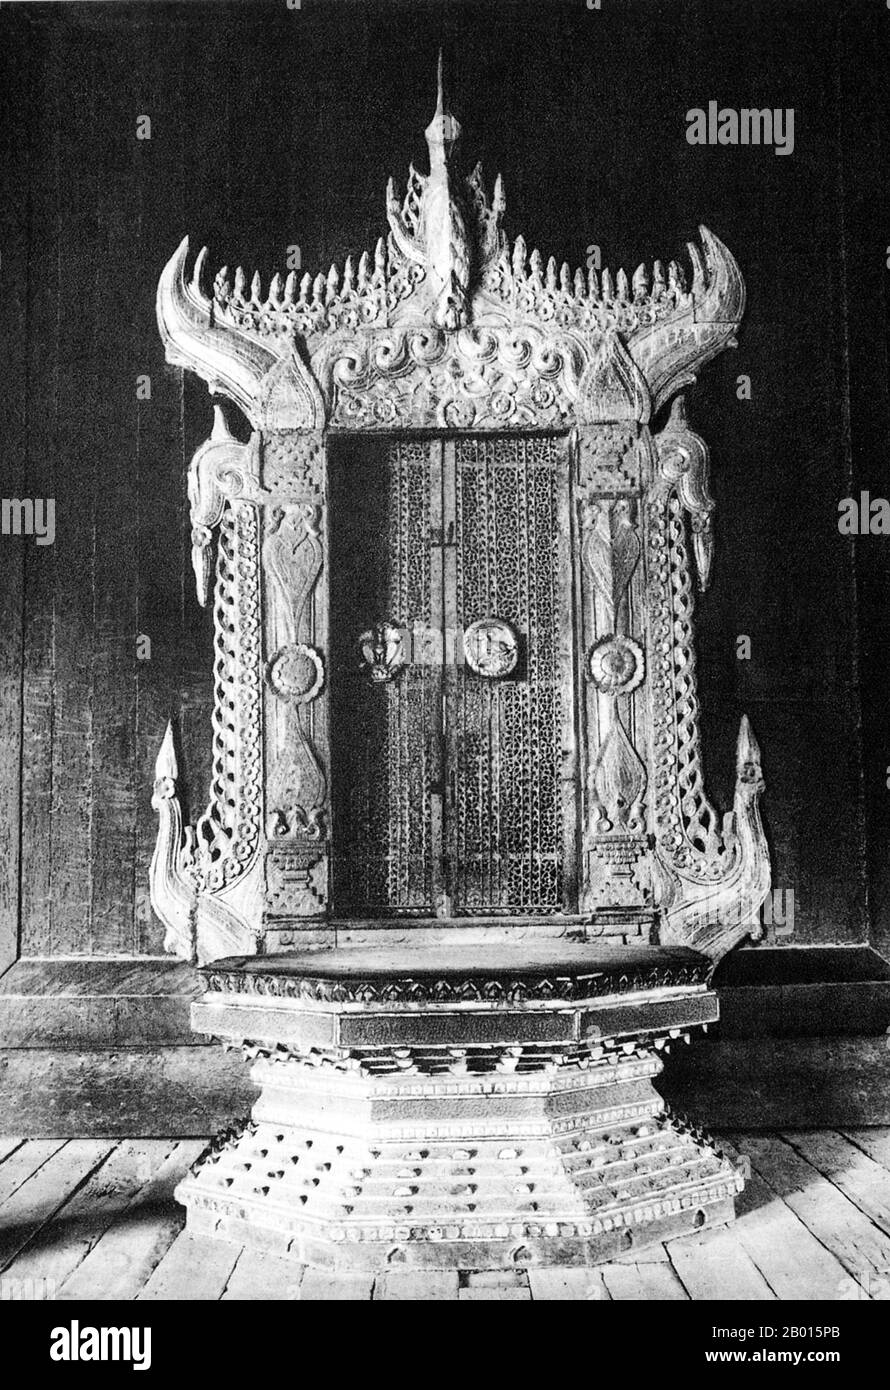 Burma/Myanmar: Der Hamsa (Gans) Thron im Mandalay Palast, c. 1920er Jahre. Der Mandalay Palace wurde zwischen 1857 und 1859 als Teil der neuen königlichen Hauptstadt von König Mindon, Mandalay, erbaut, in Erfüllung einer buddhistischen Prophezeiung, dass am Fuße des Mandalay Hill ein religiöses Zentrum errichtet werden würde. 1861 wurde das Gericht aus der früheren Hauptstadt Amarapura in die neu erbaute Stadt überführt. Der Plan des Mandalay Palace folgt weitgehend dem traditionellen burmesischen Palastdesign, in einem ummauerten Fort, das von einem Graben umgeben ist. Der Palast selbst befindet sich im Zentrum der Zitadelle und ist nach Osten ausgerichtet. Stockfoto